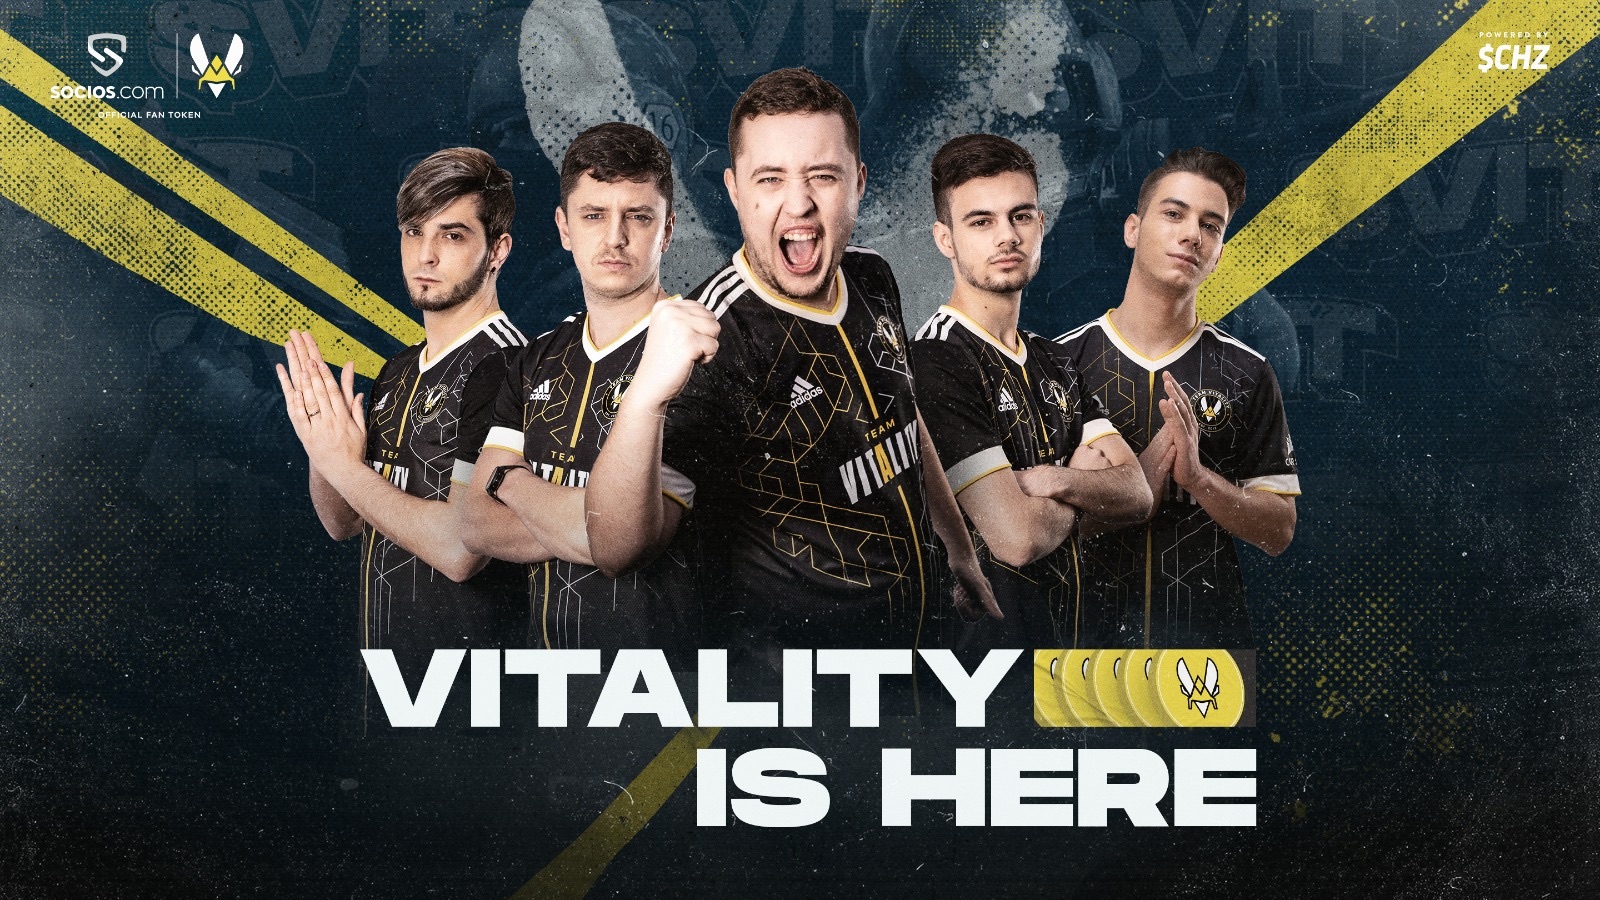 Equipe CS:GO sur fond bleu et texte "Vitality is here" pour annoncer le partenariat Socios et Team Vitality